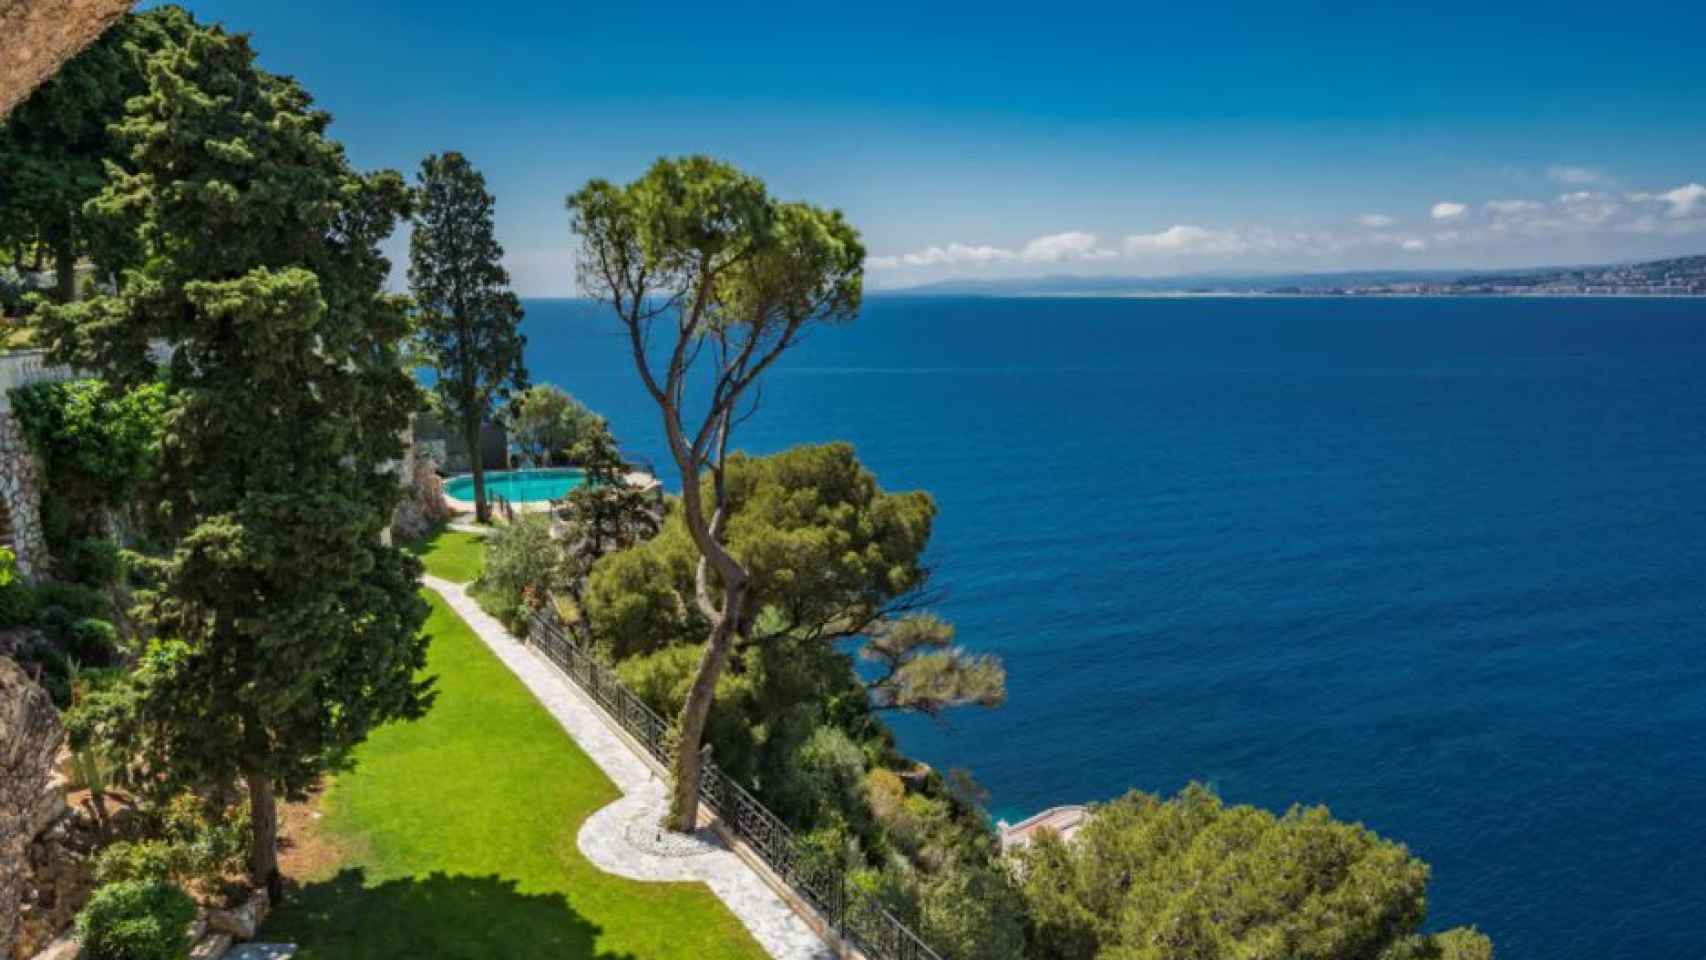 La propiedad tiene una impresionante vista a la ciudad de Niza y al mar Mediterráneo.